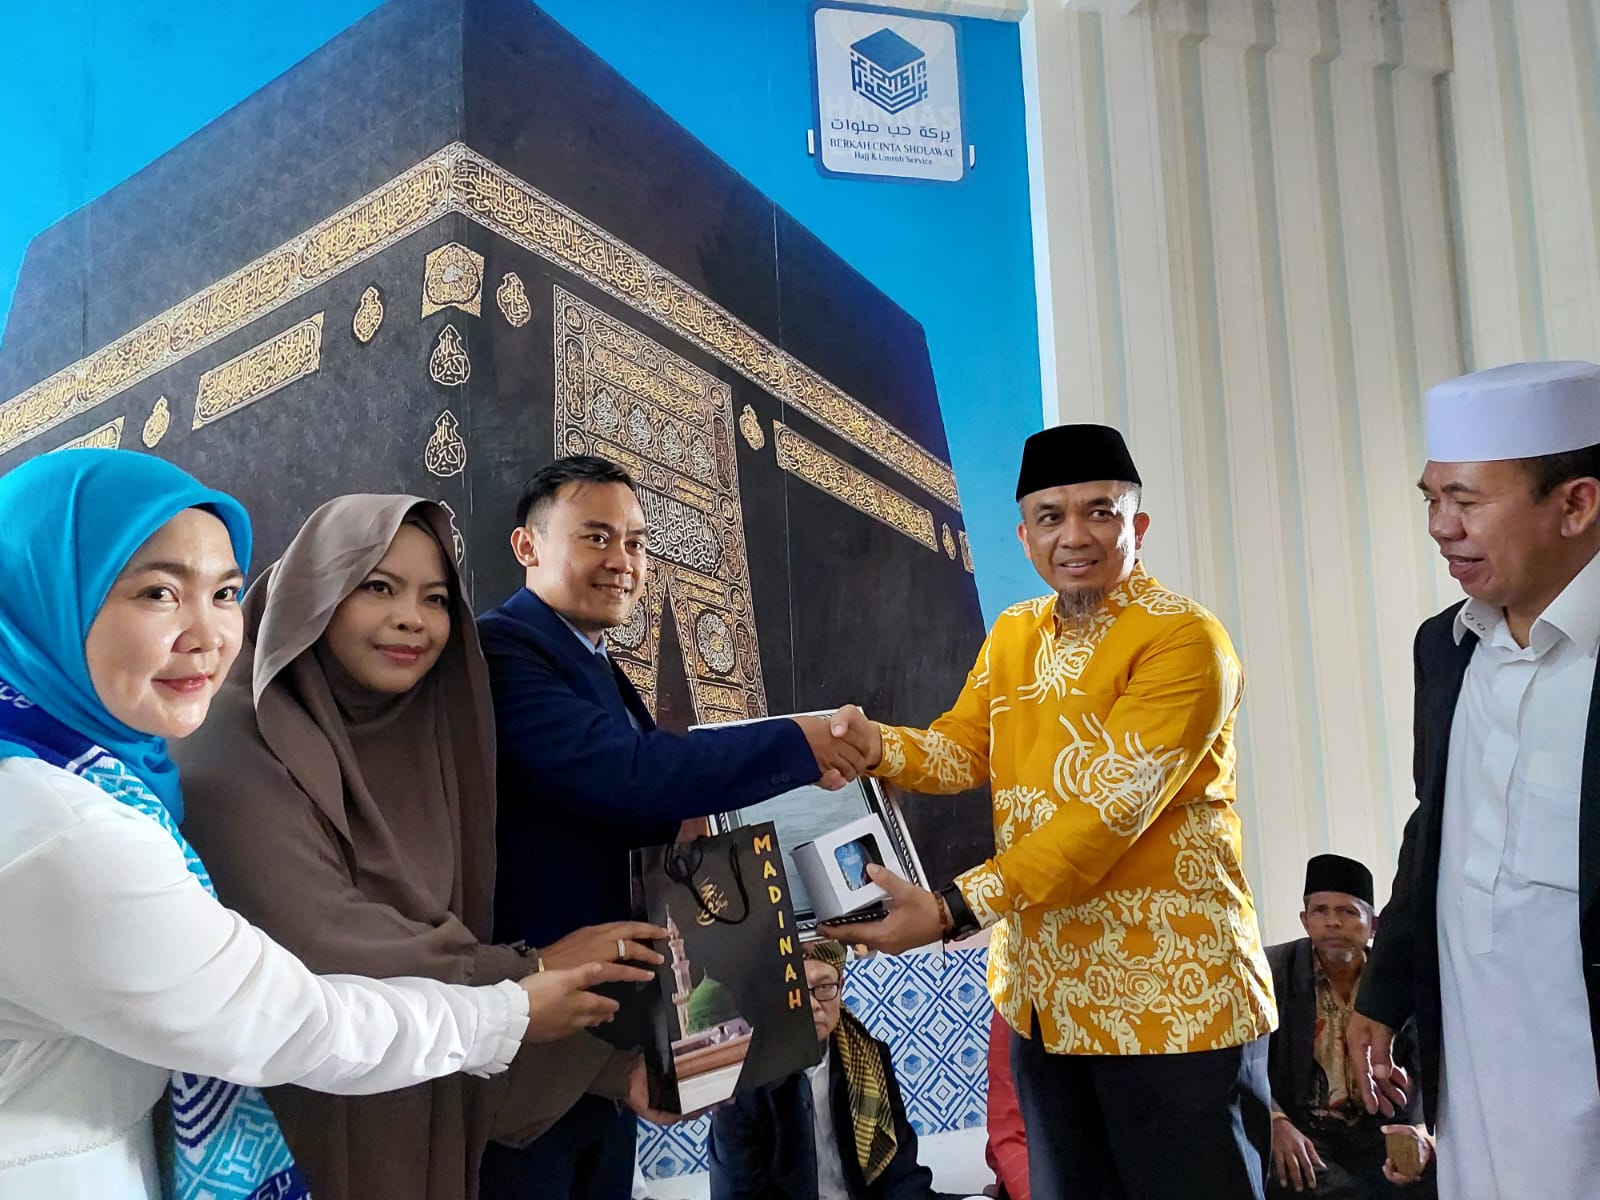 Kantor Cabang Travel Haji dan Umrah PT Berkah Cinta Shalawat Diresmikan, Agustus Berangkatkan Jemaah Umrah 